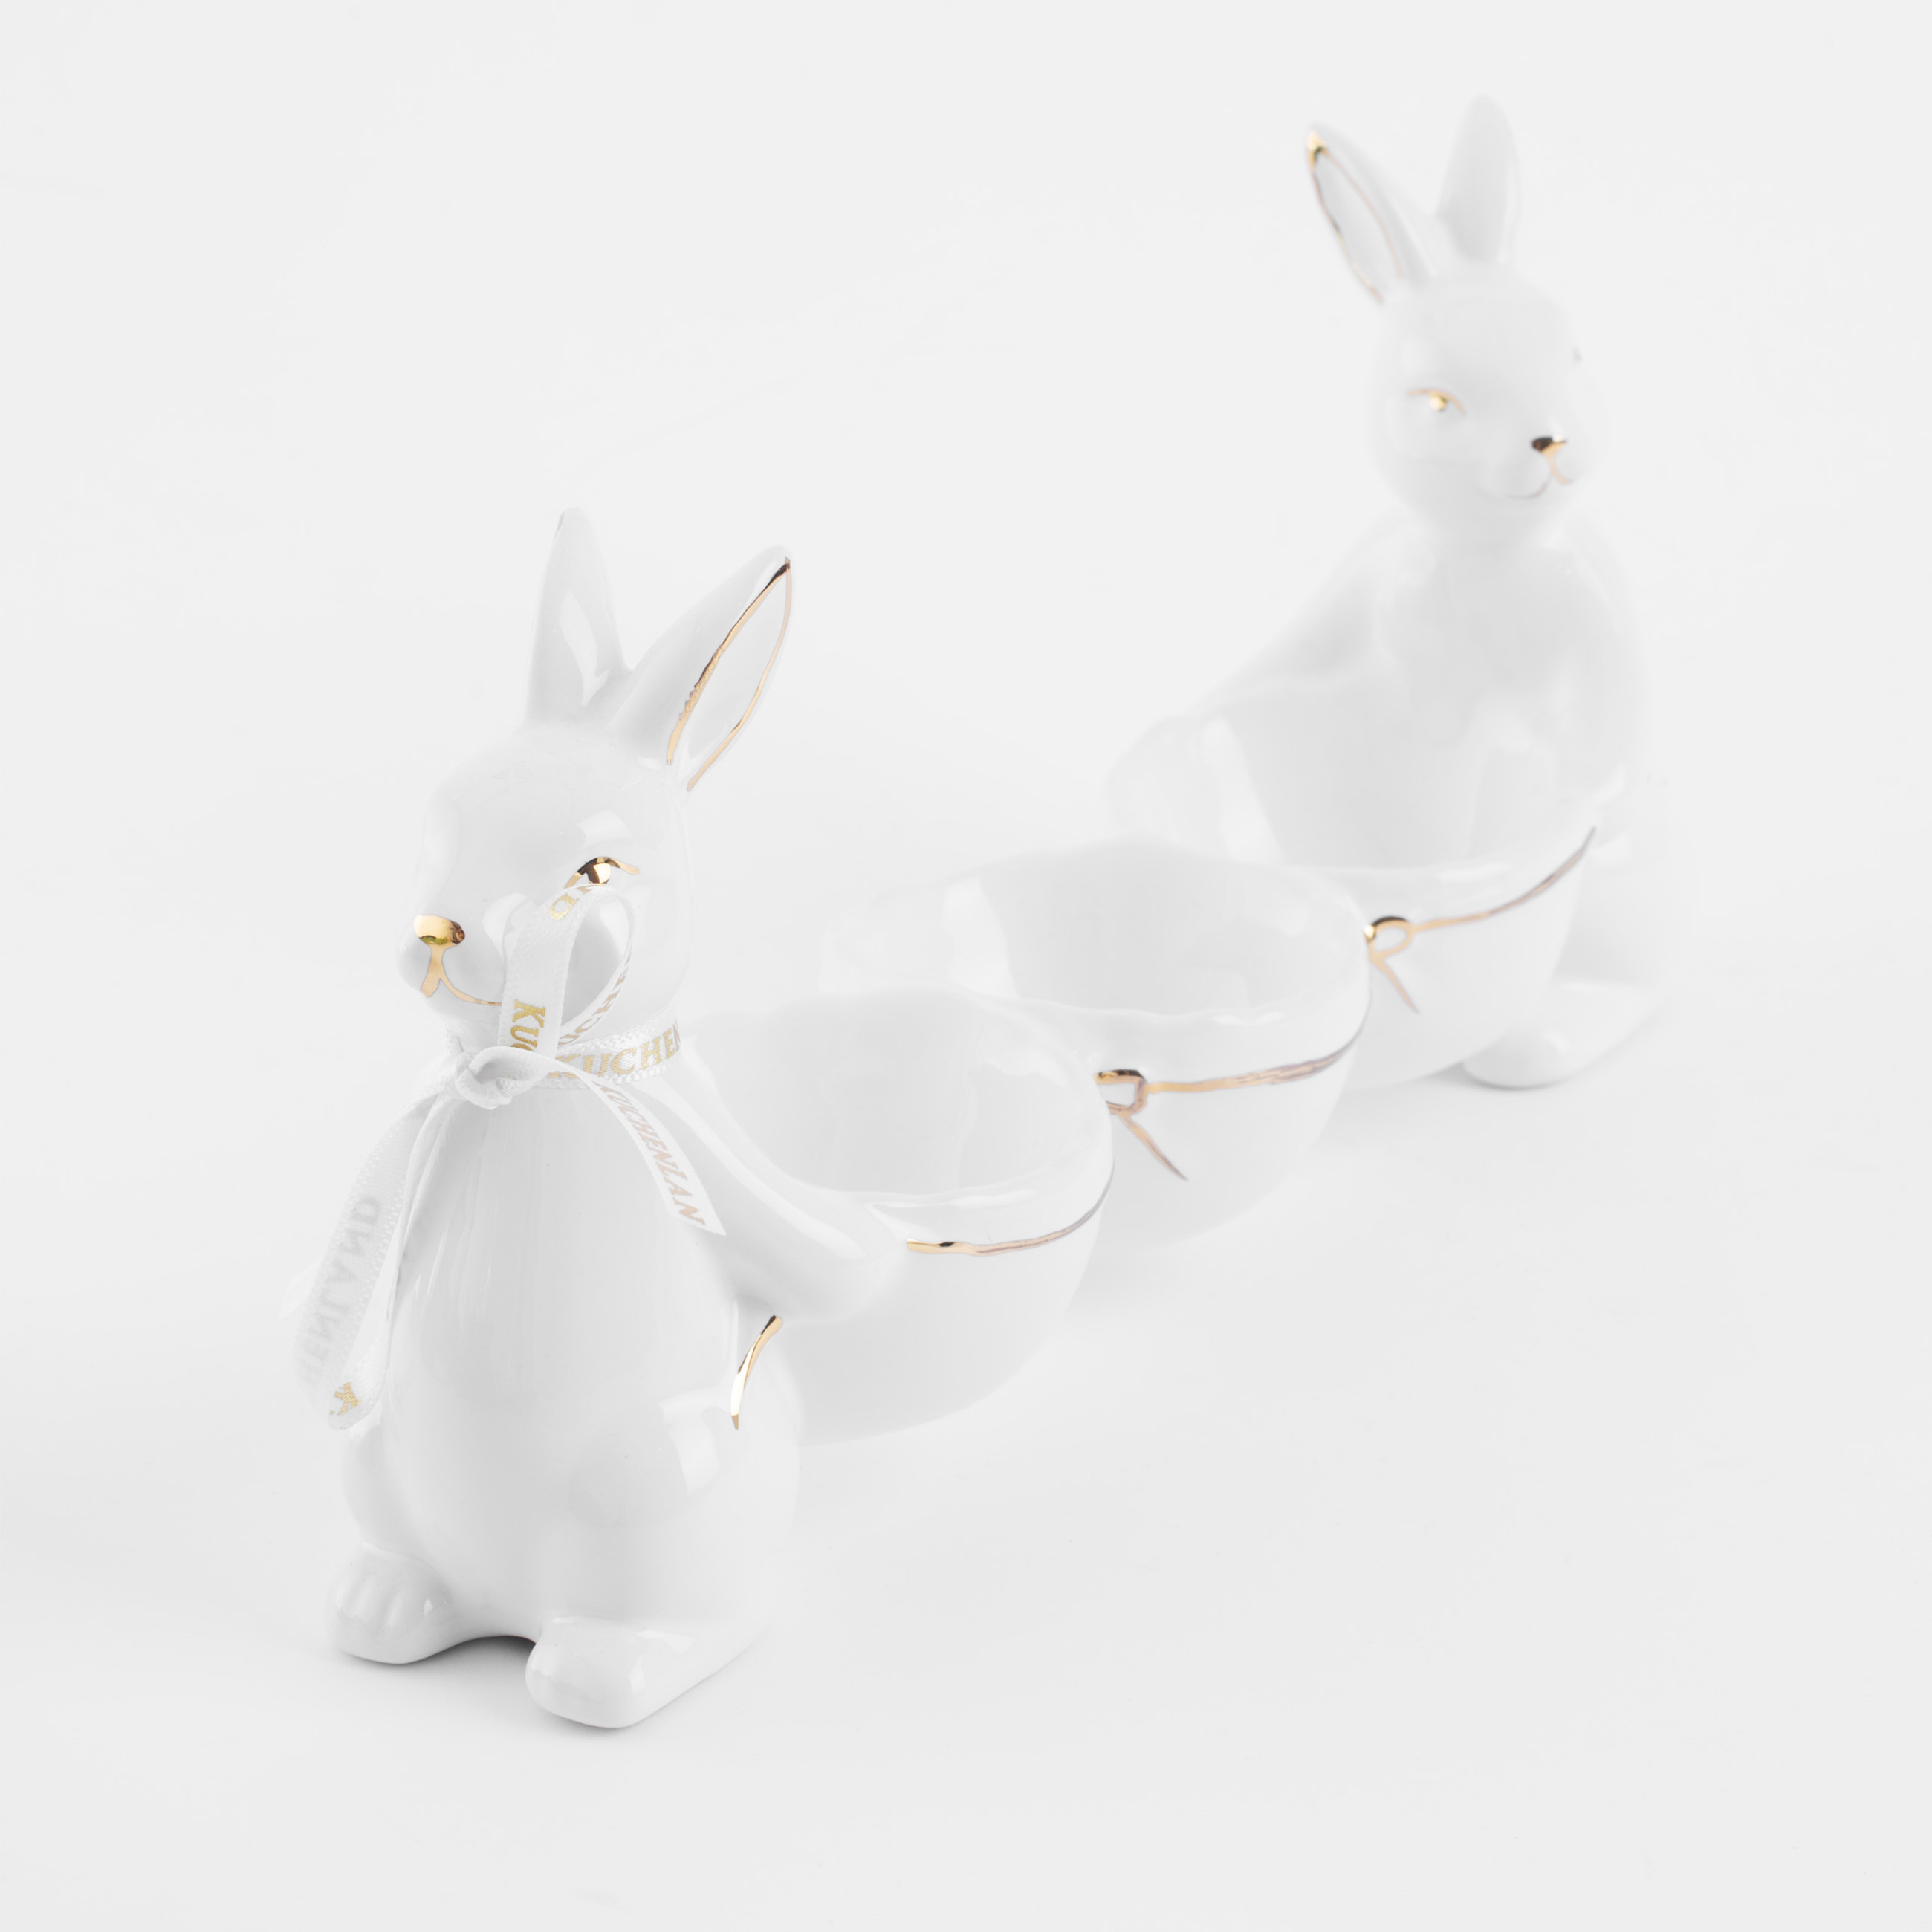 Подставка для яйца, 3 отд, 21х10 см, керамика, бело-золотистая, Кролики, Easter gold изображение № 2